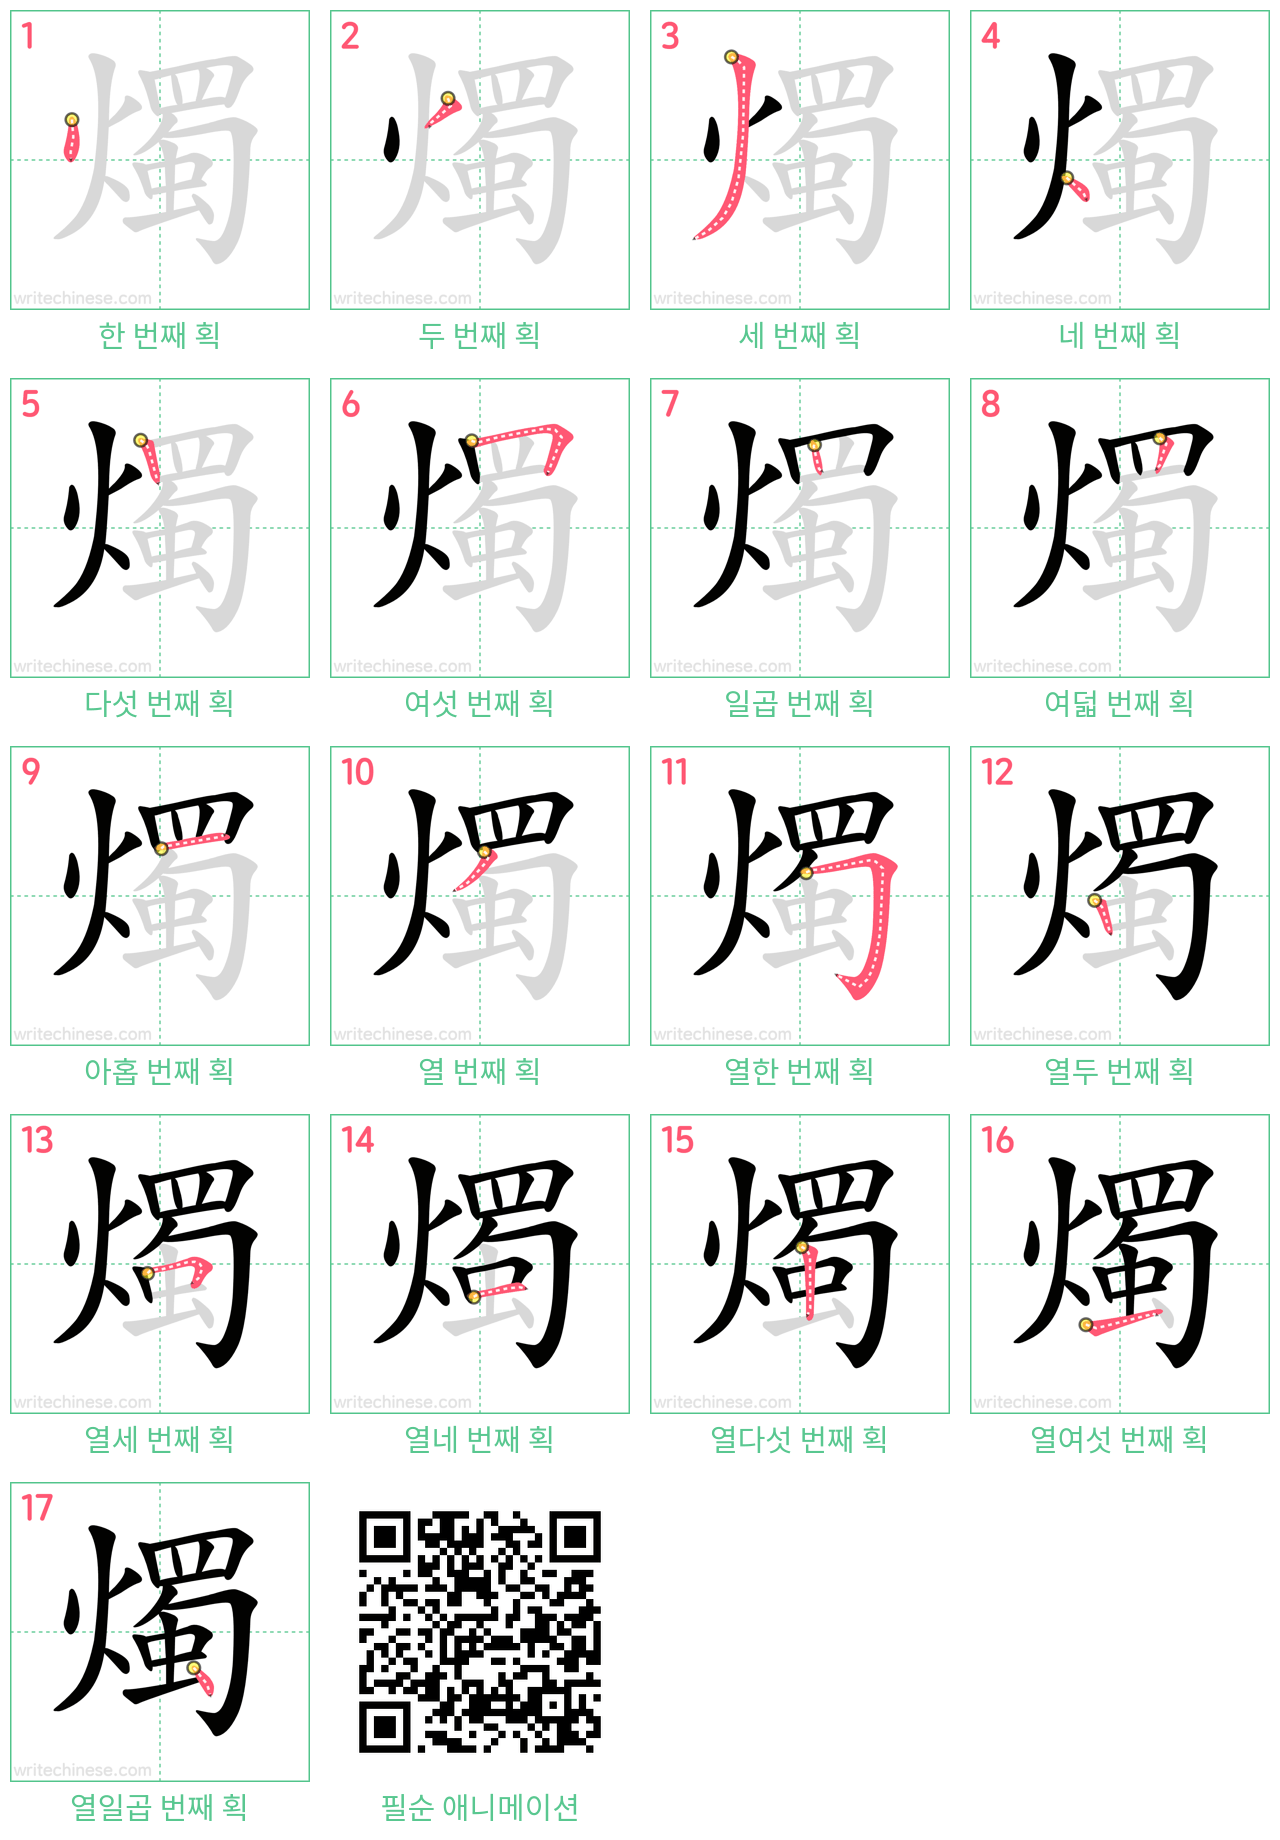 燭 step-by-step stroke order diagrams